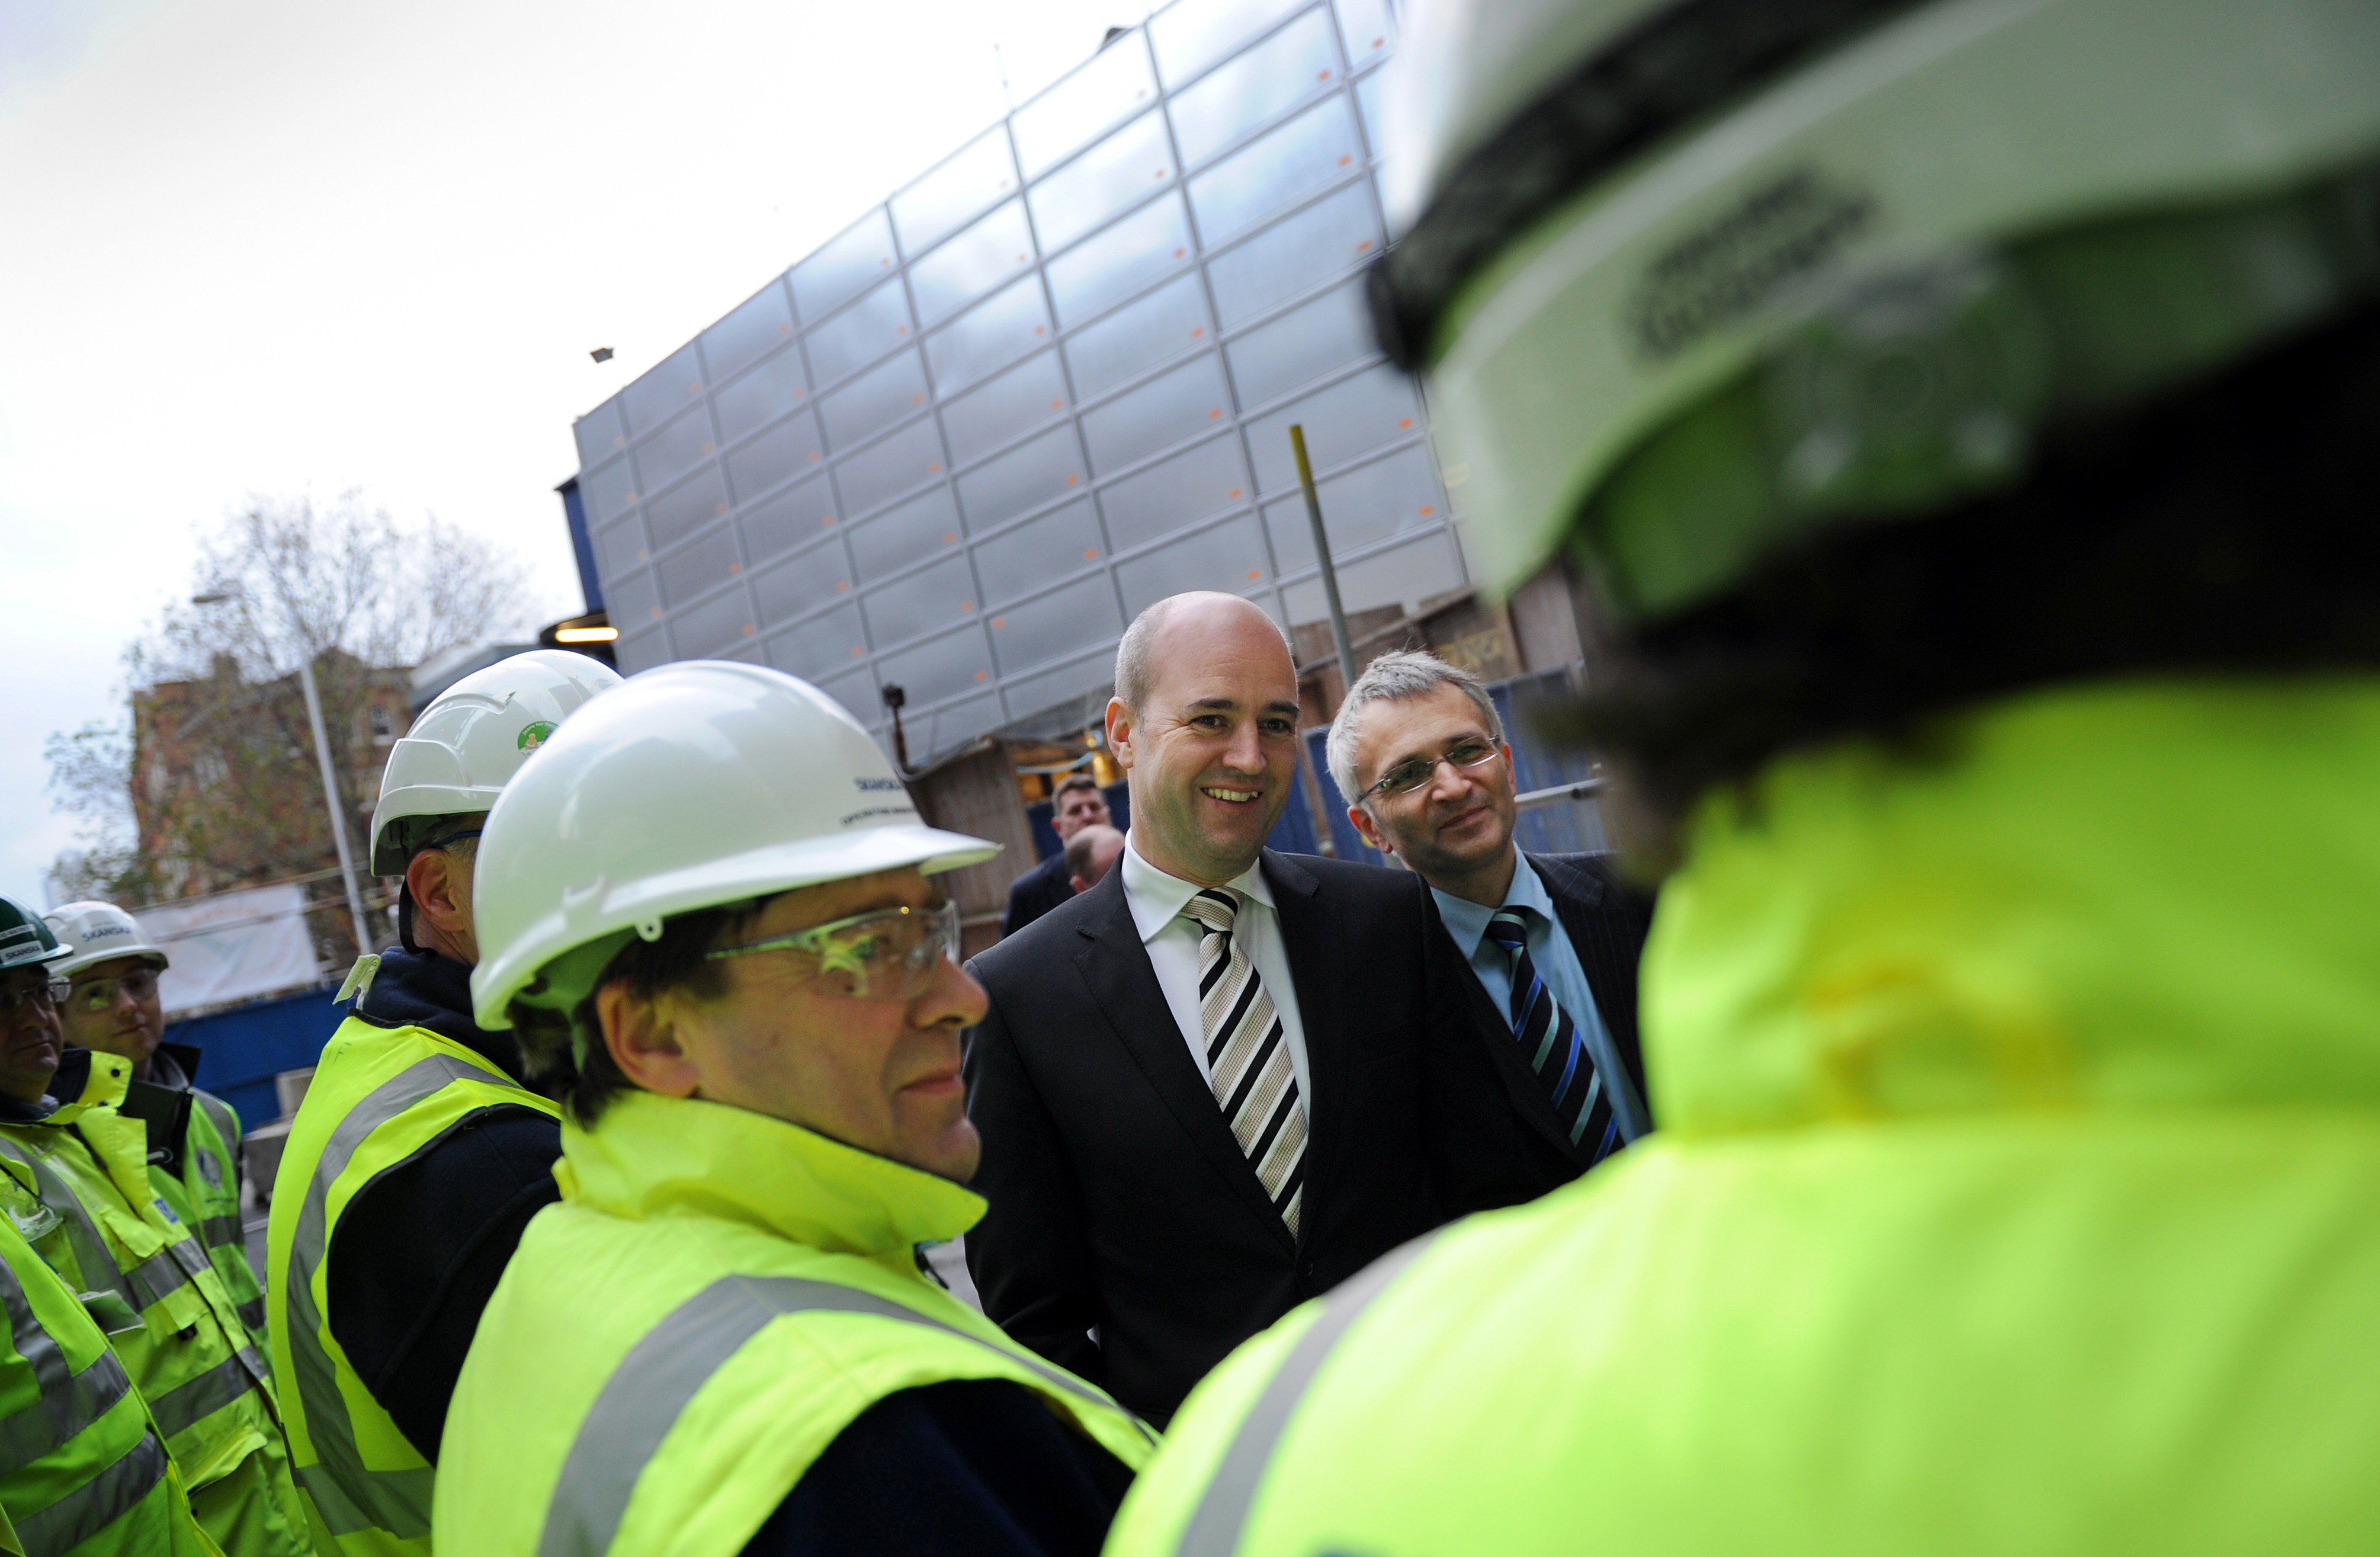 Reinfeldt är för tillfället på besök i Storbritannien - där hans motsvarighet, David Cameron, vill låna lite framgångsglans. Här snackar Reinfeldt med brittiska byggarbetare.